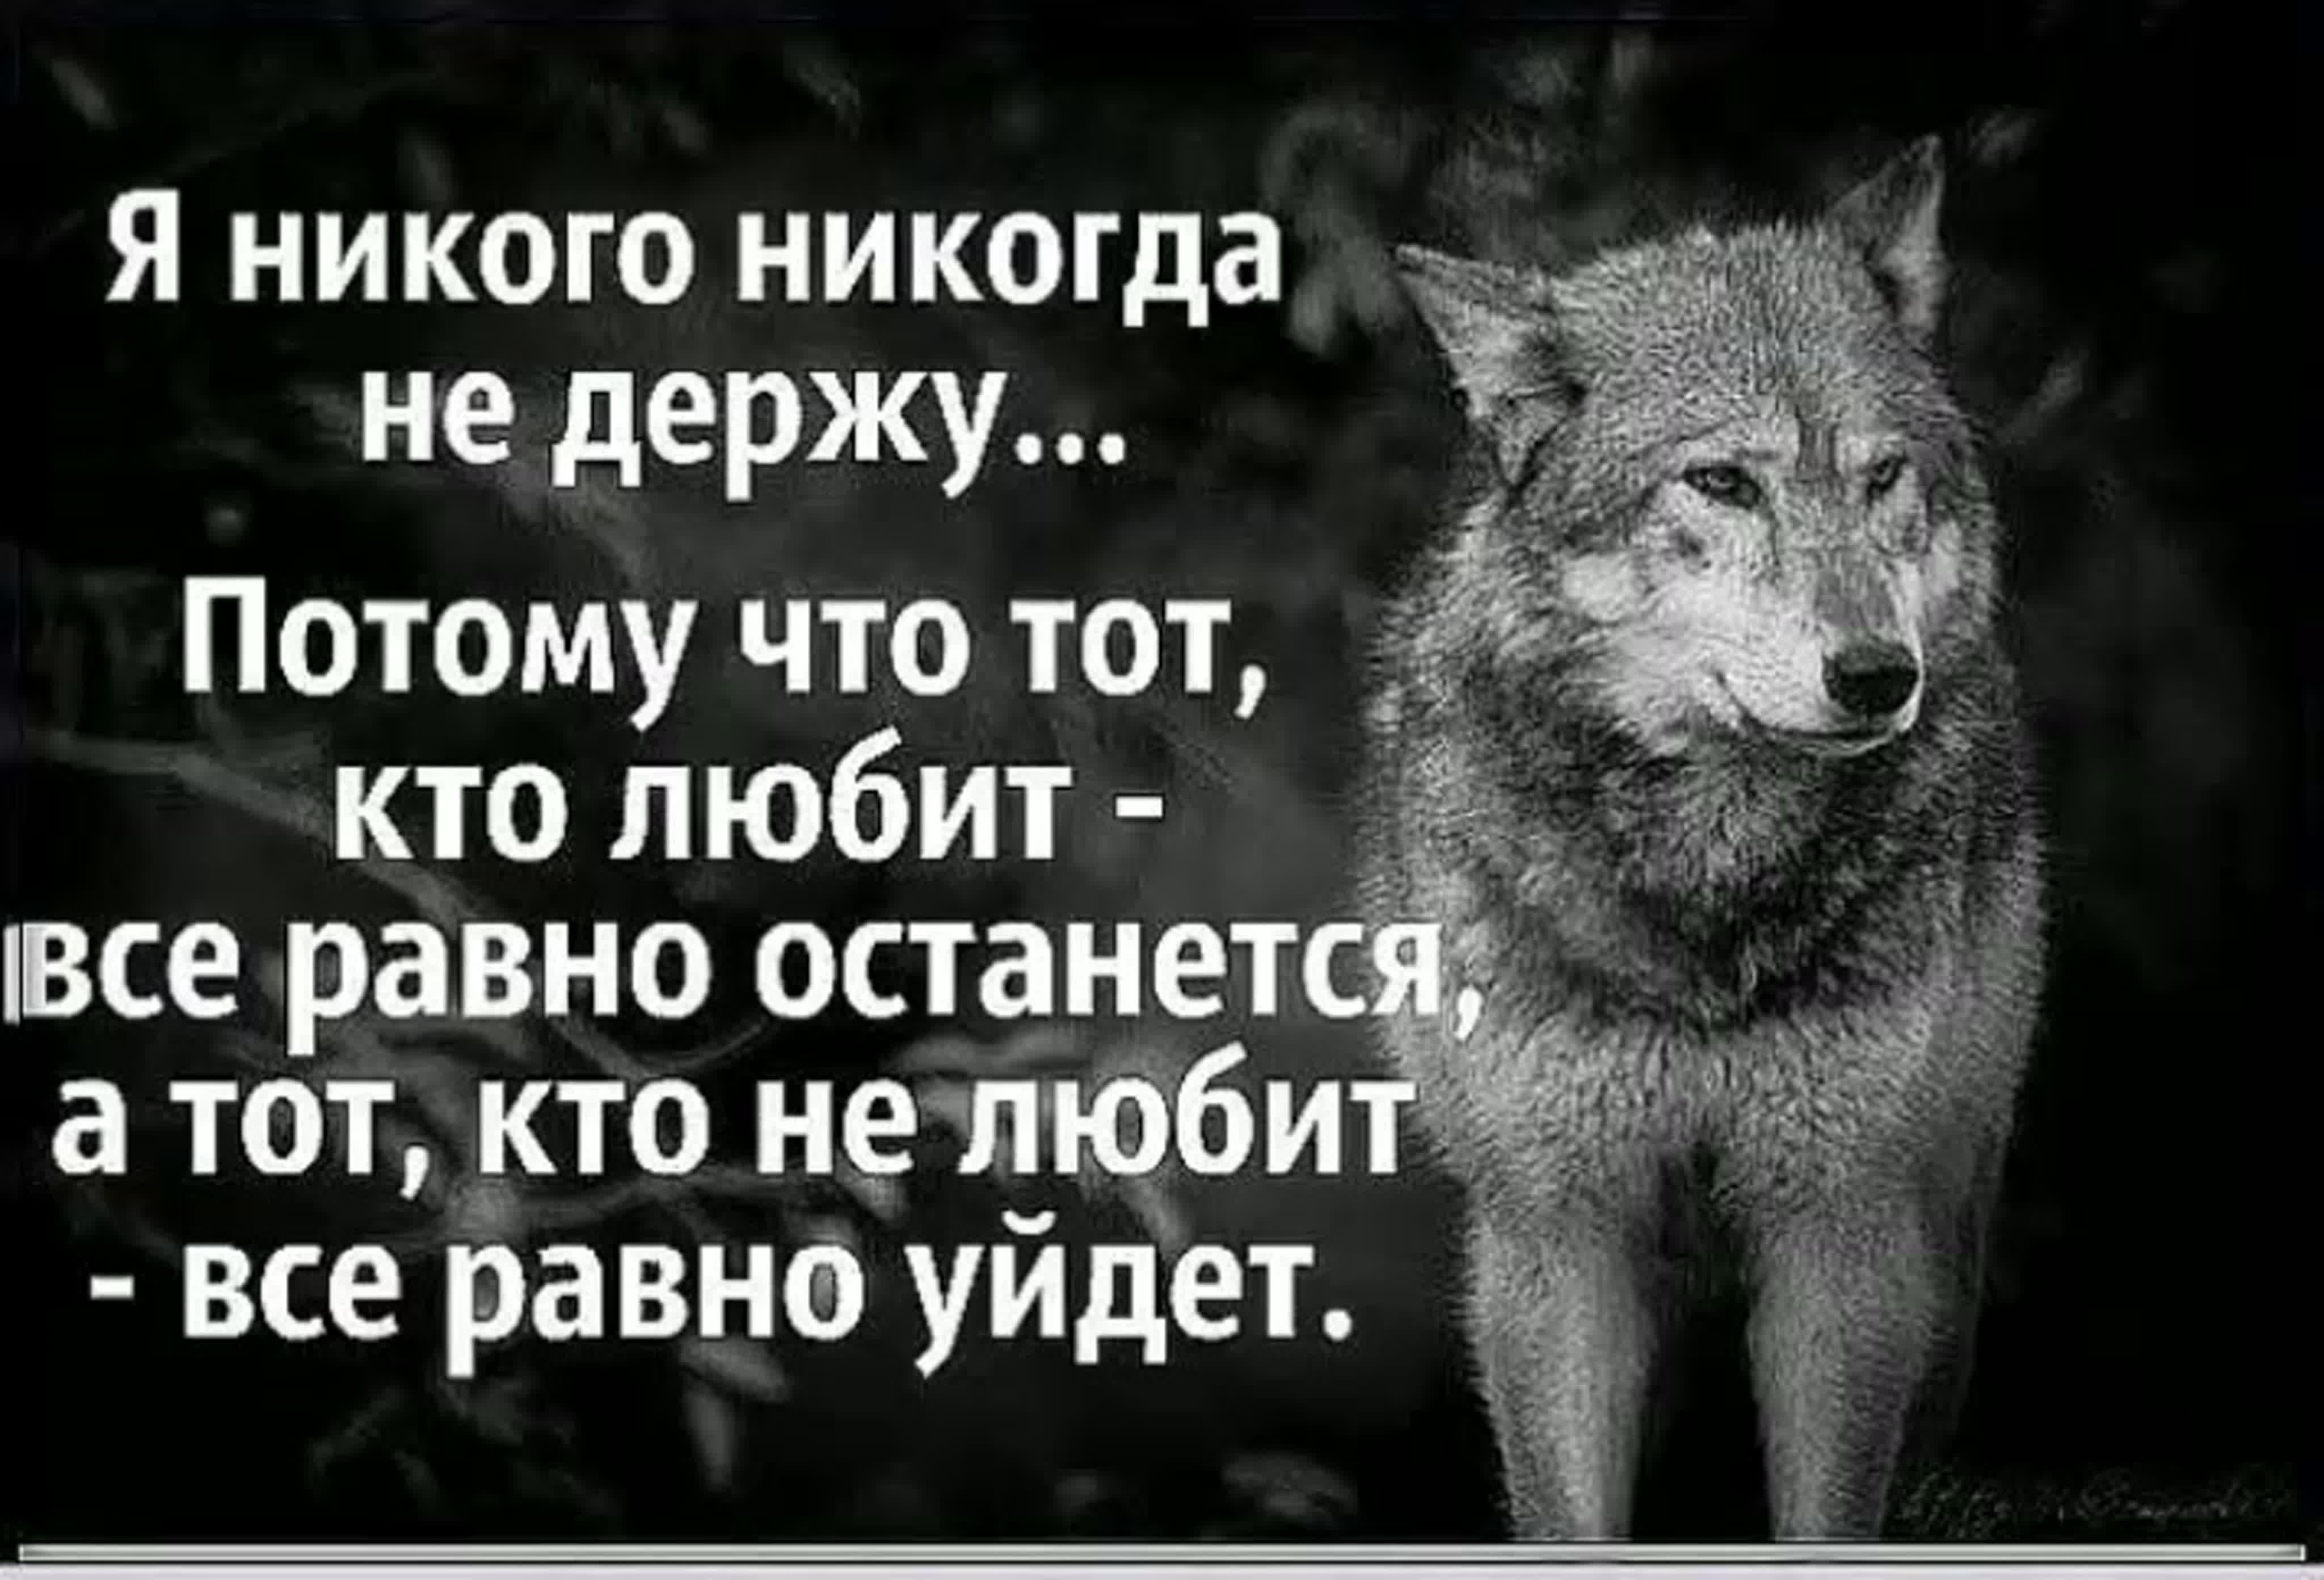 Видео никому никогда. Цитаты. Никого не держу цитаты. Волк никогда не предаст свою волчицу ради доступной собаки. Мудрые цитаты.волк.